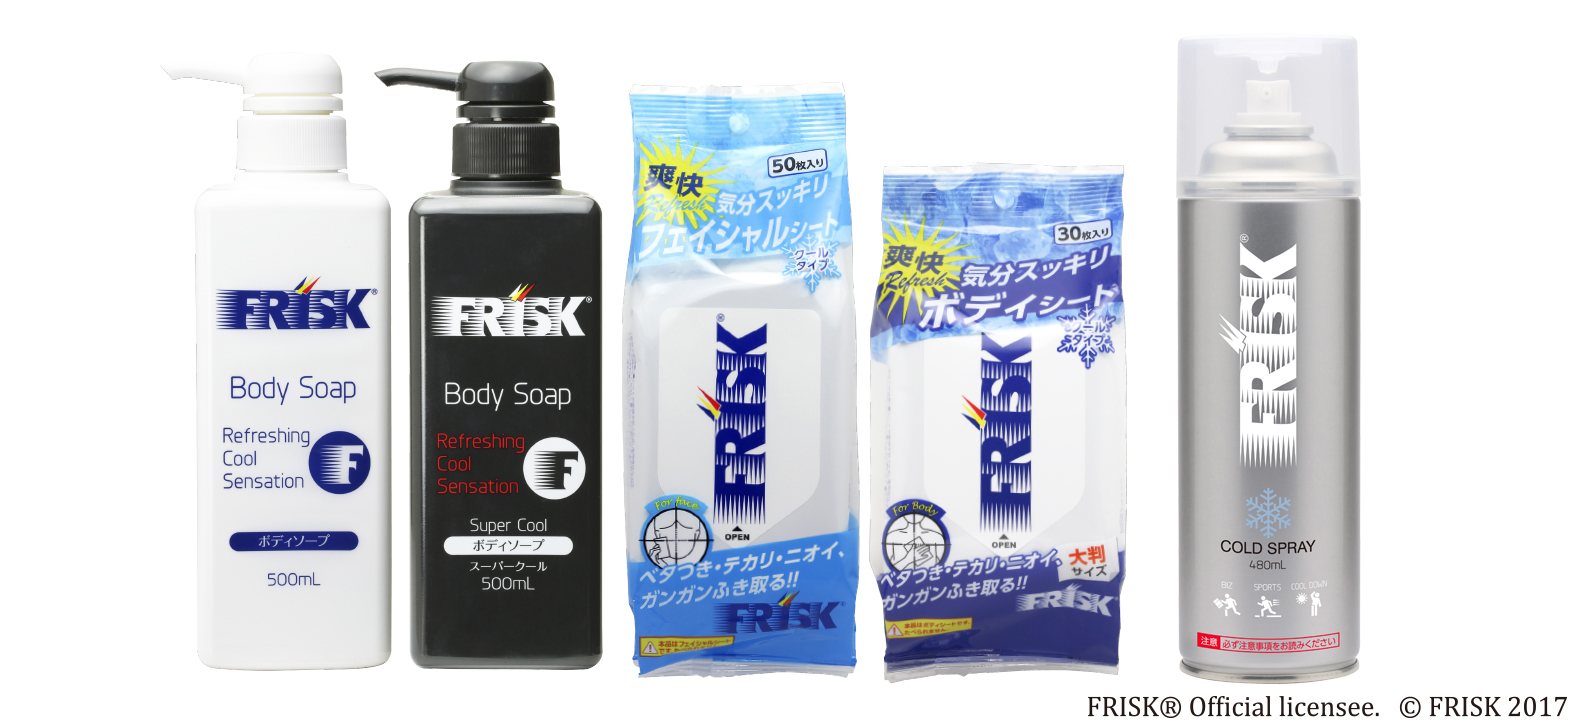 世界初 Frisk フリスク の冷却スプレーが登場 超クールなコスメで暑い夏をぶっとばそう 株式会社ドウシシャのプレスリリース